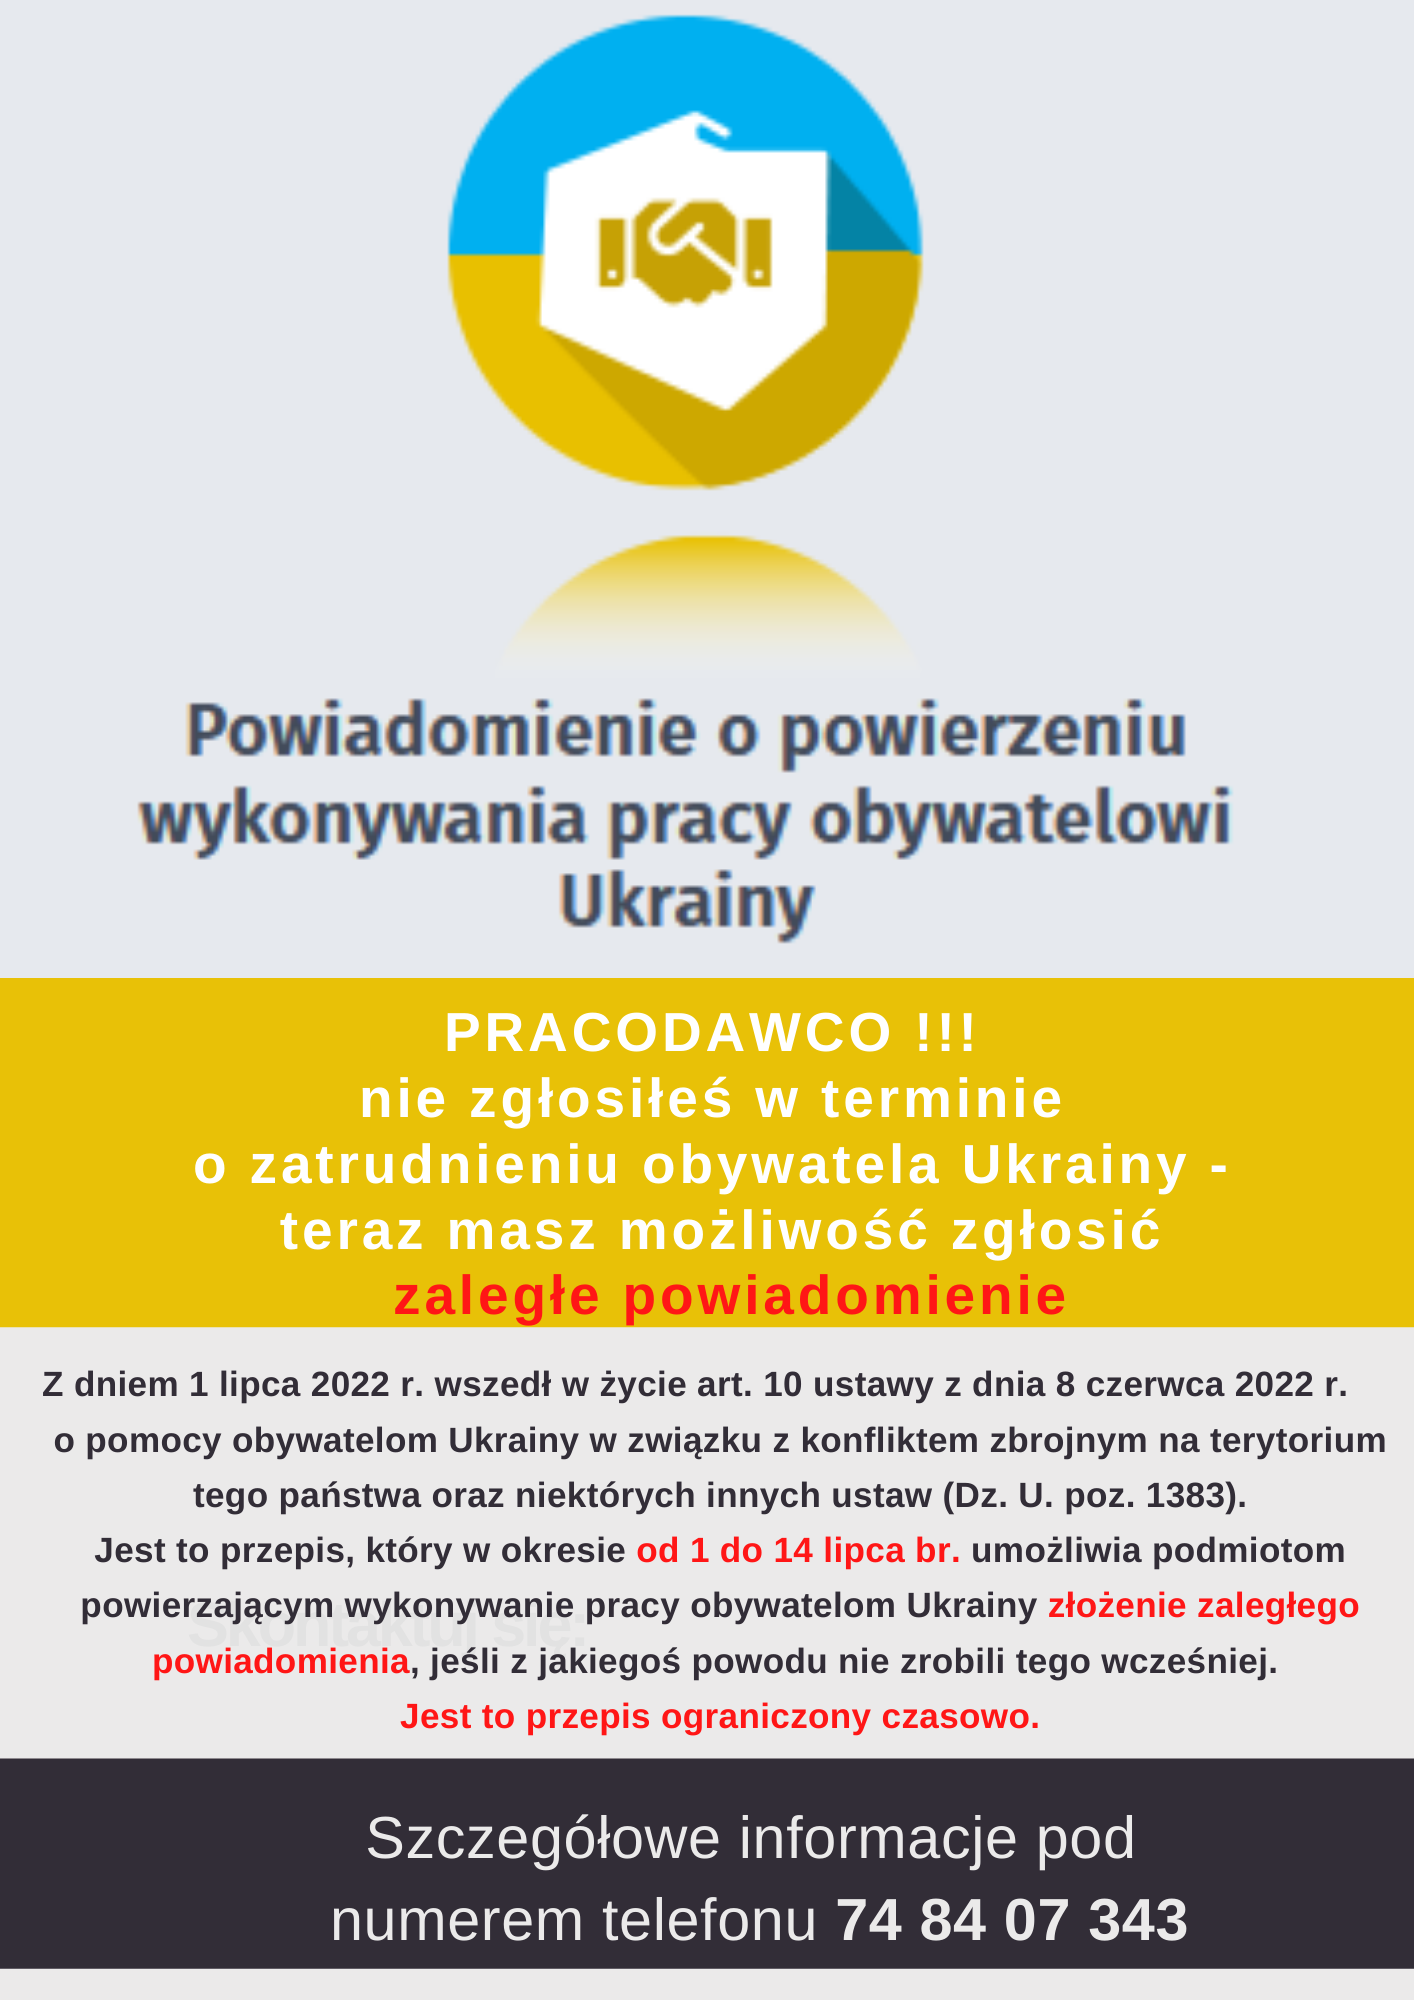 Informacja o możliwości zgłoszenia zaległego powiadomienia o powierzeniu wykonywania pracy obywatelowi Ukrainy w terminie od 1 do 14 lipca 2022